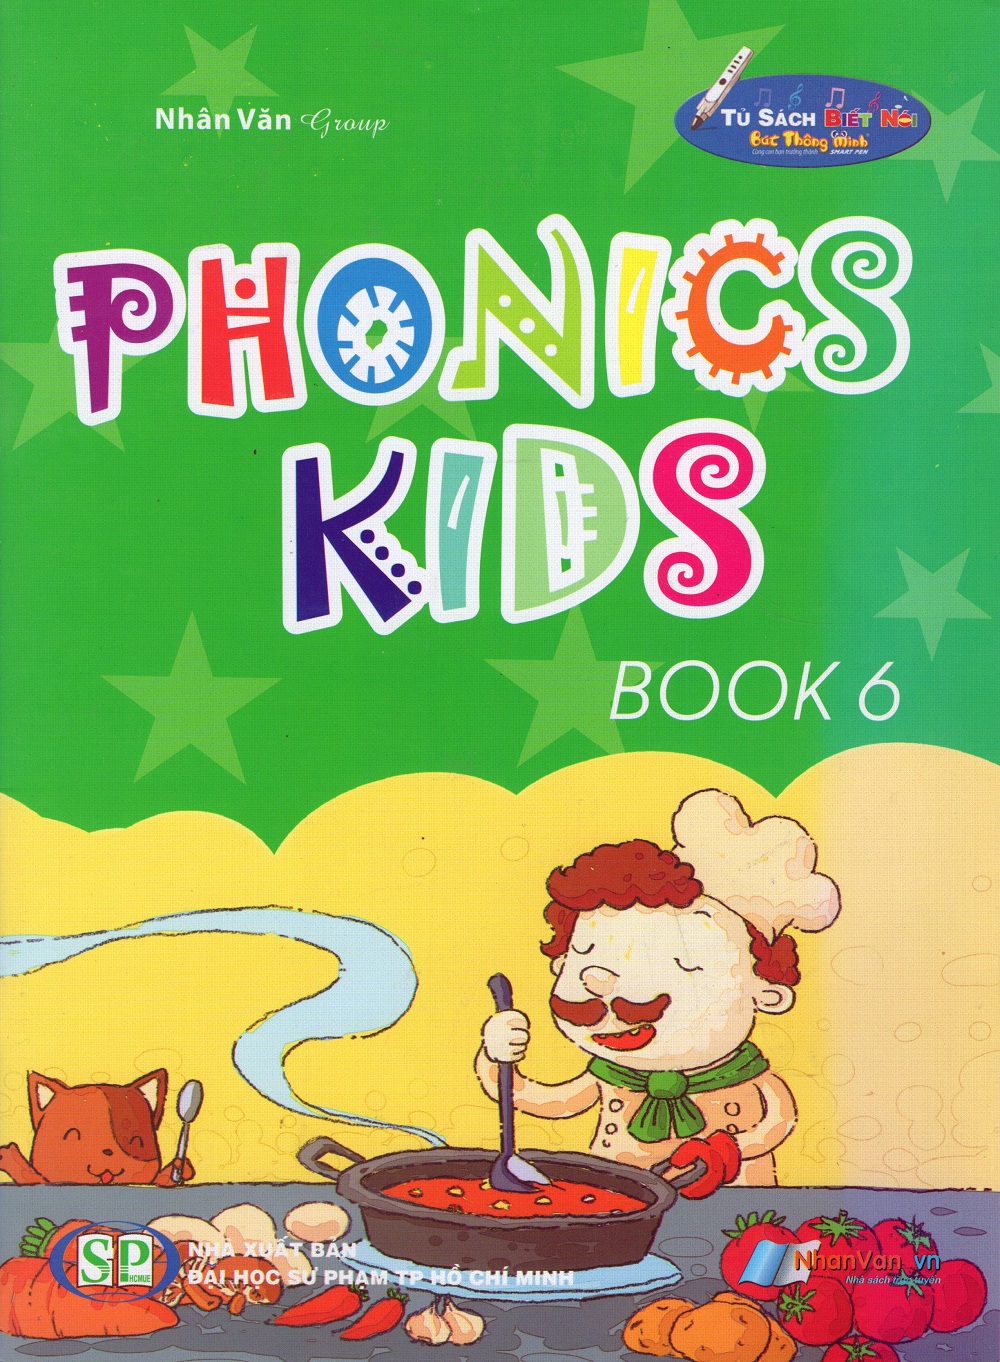 Bìa sách Phonics Kids (Tập 6)